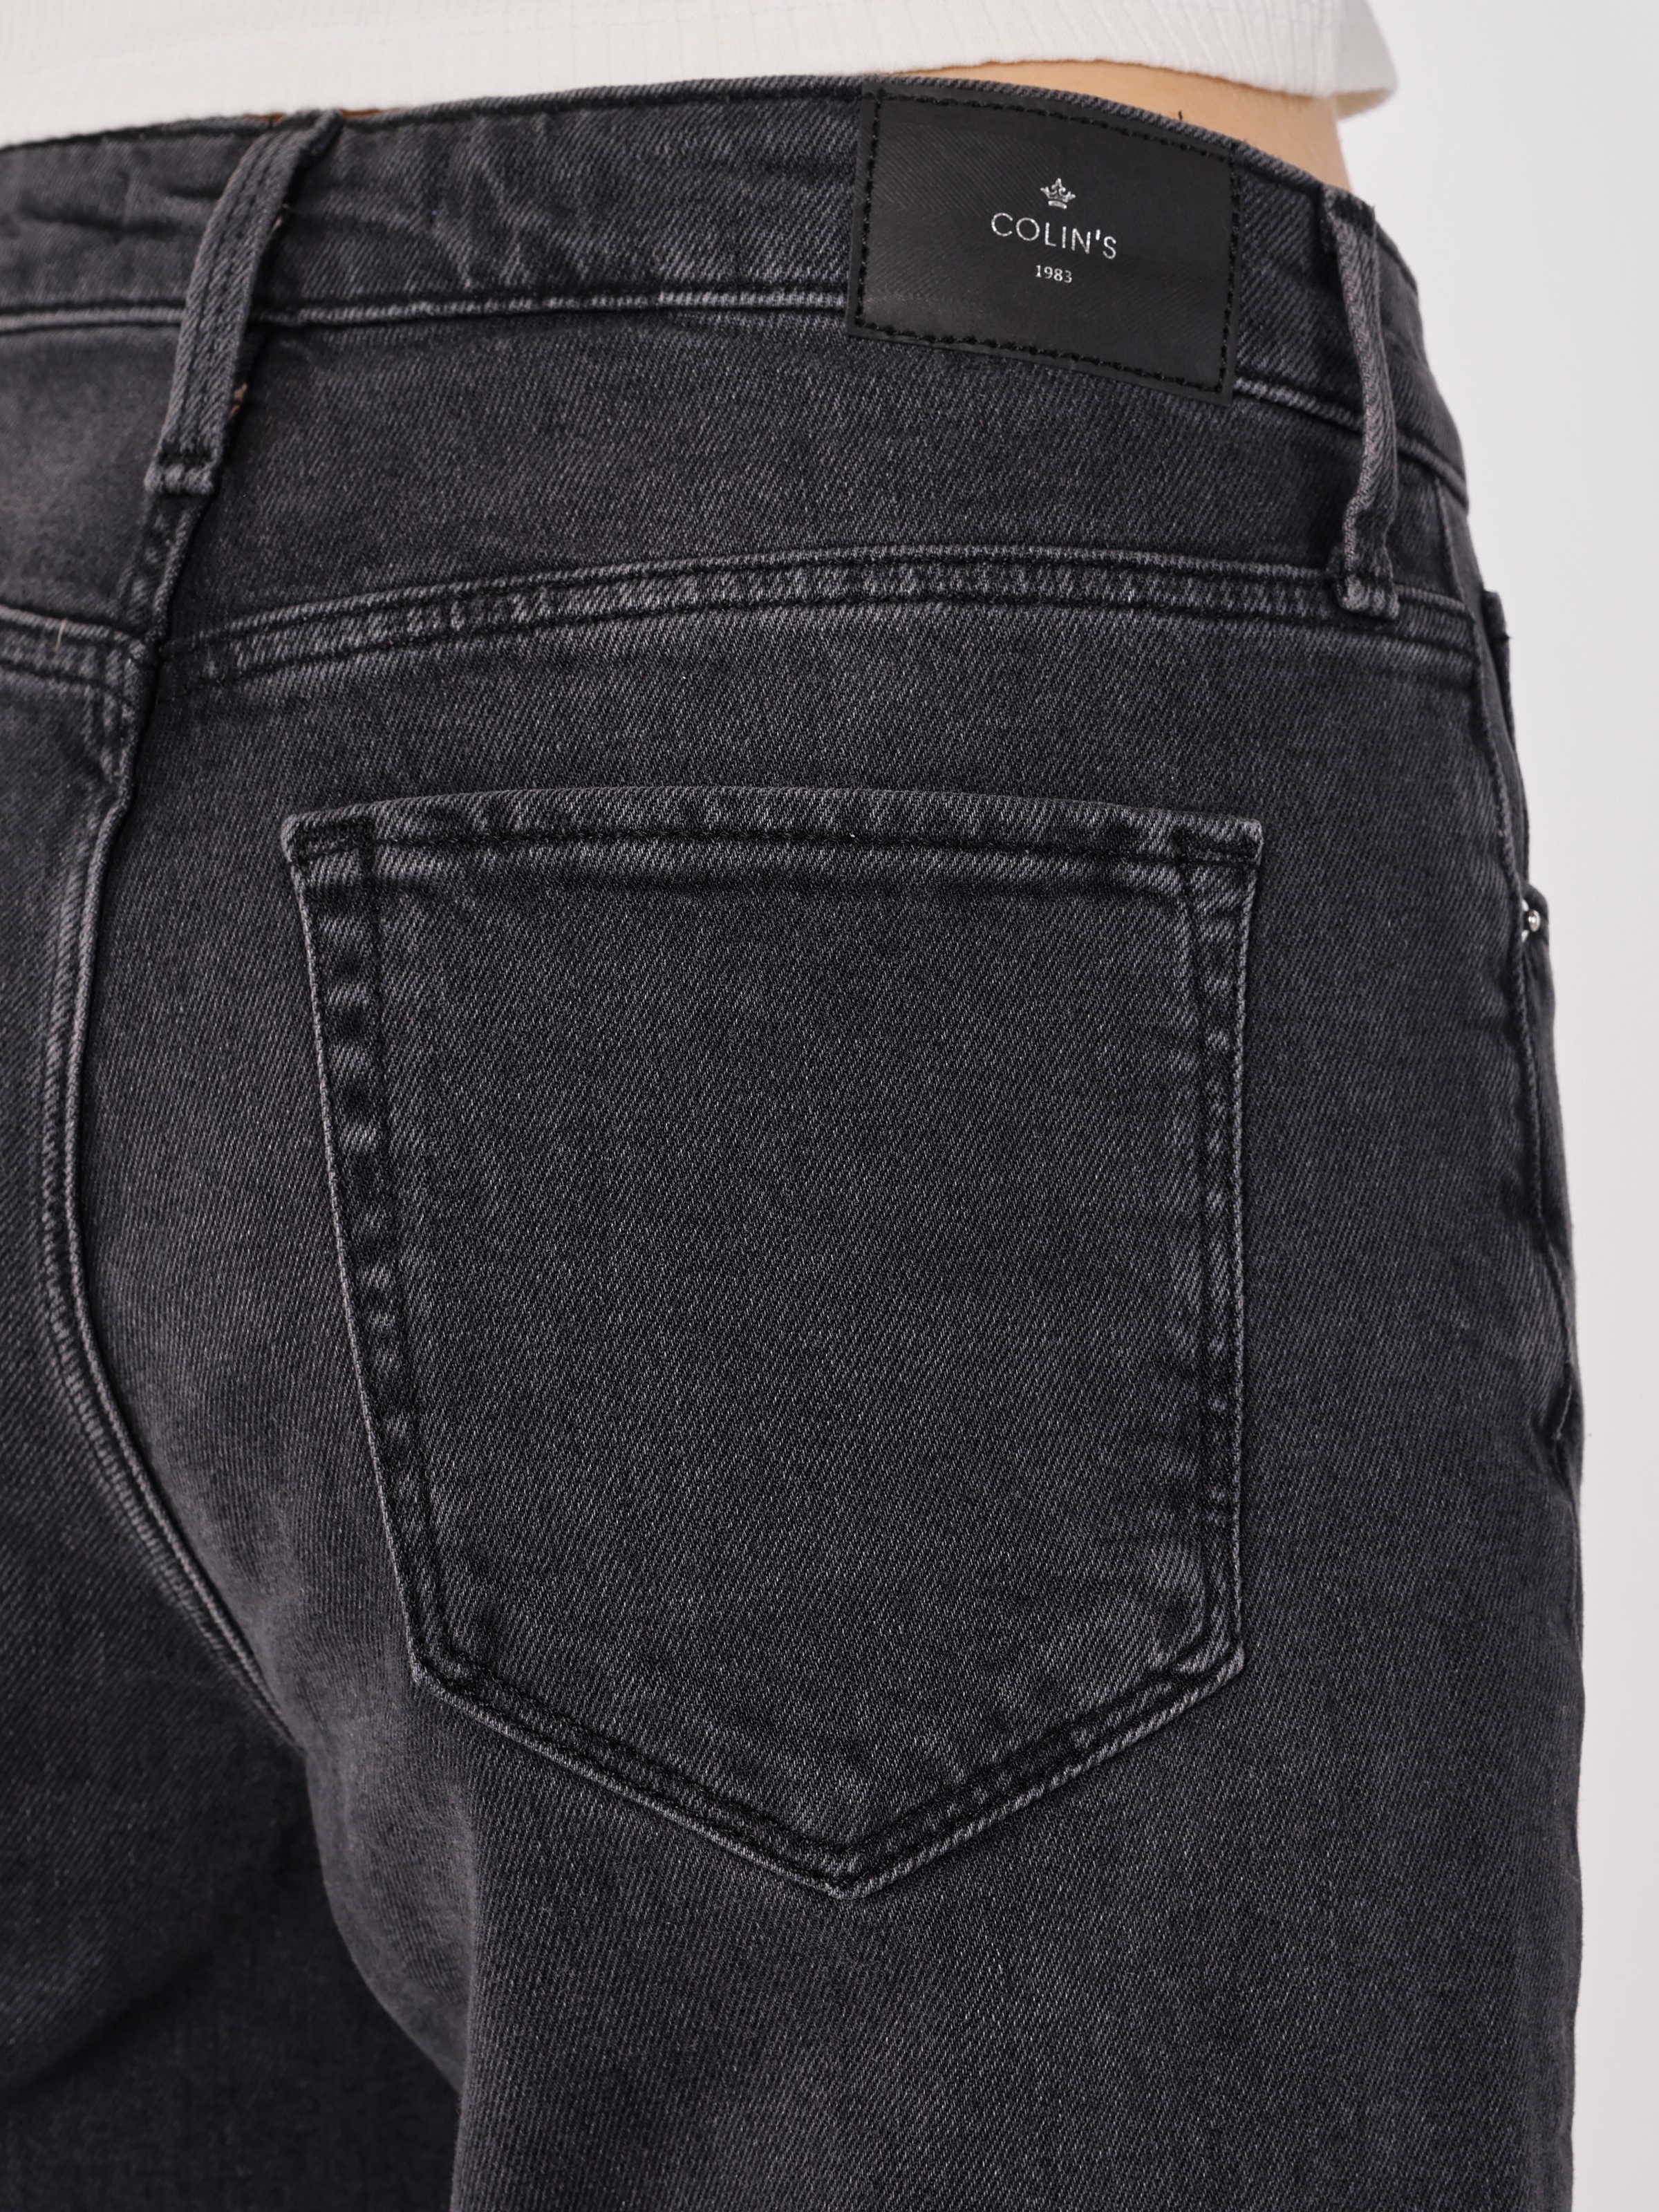 Afficher les détails de 891 Maya Slim Fit Taille Normale Jambe Étroite Gris Pantalon En Jean Pour Femme